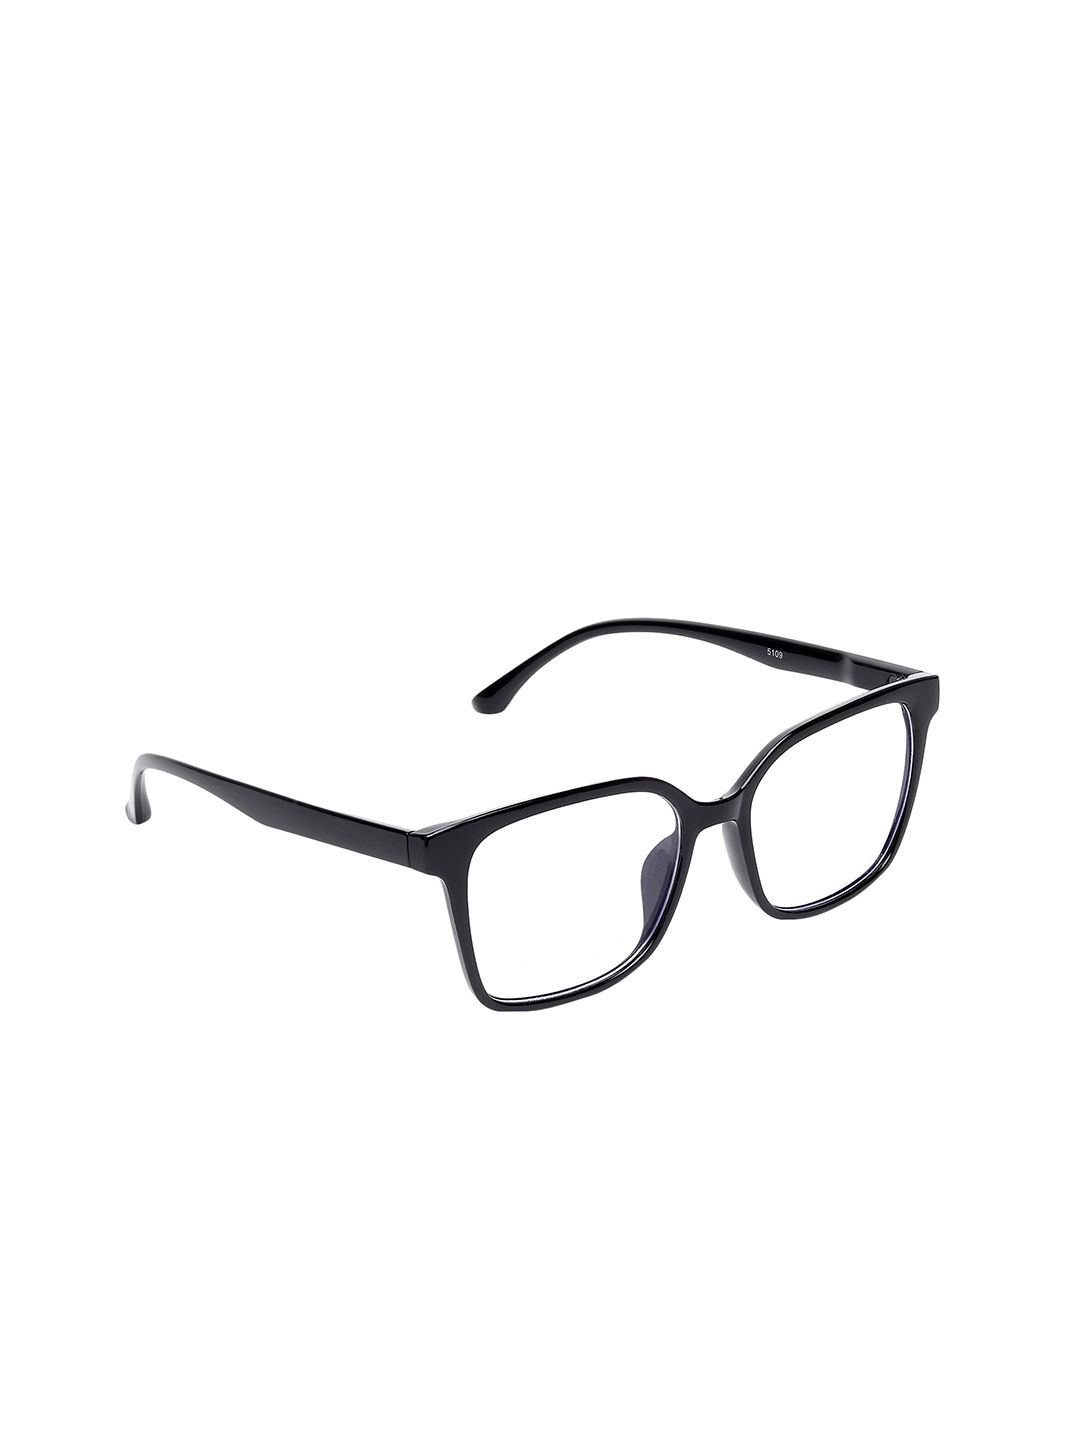 ALIGATORR Unisex Clear Lens & Black Square Sunglasses AGR_BC_285 MODEL Price in India